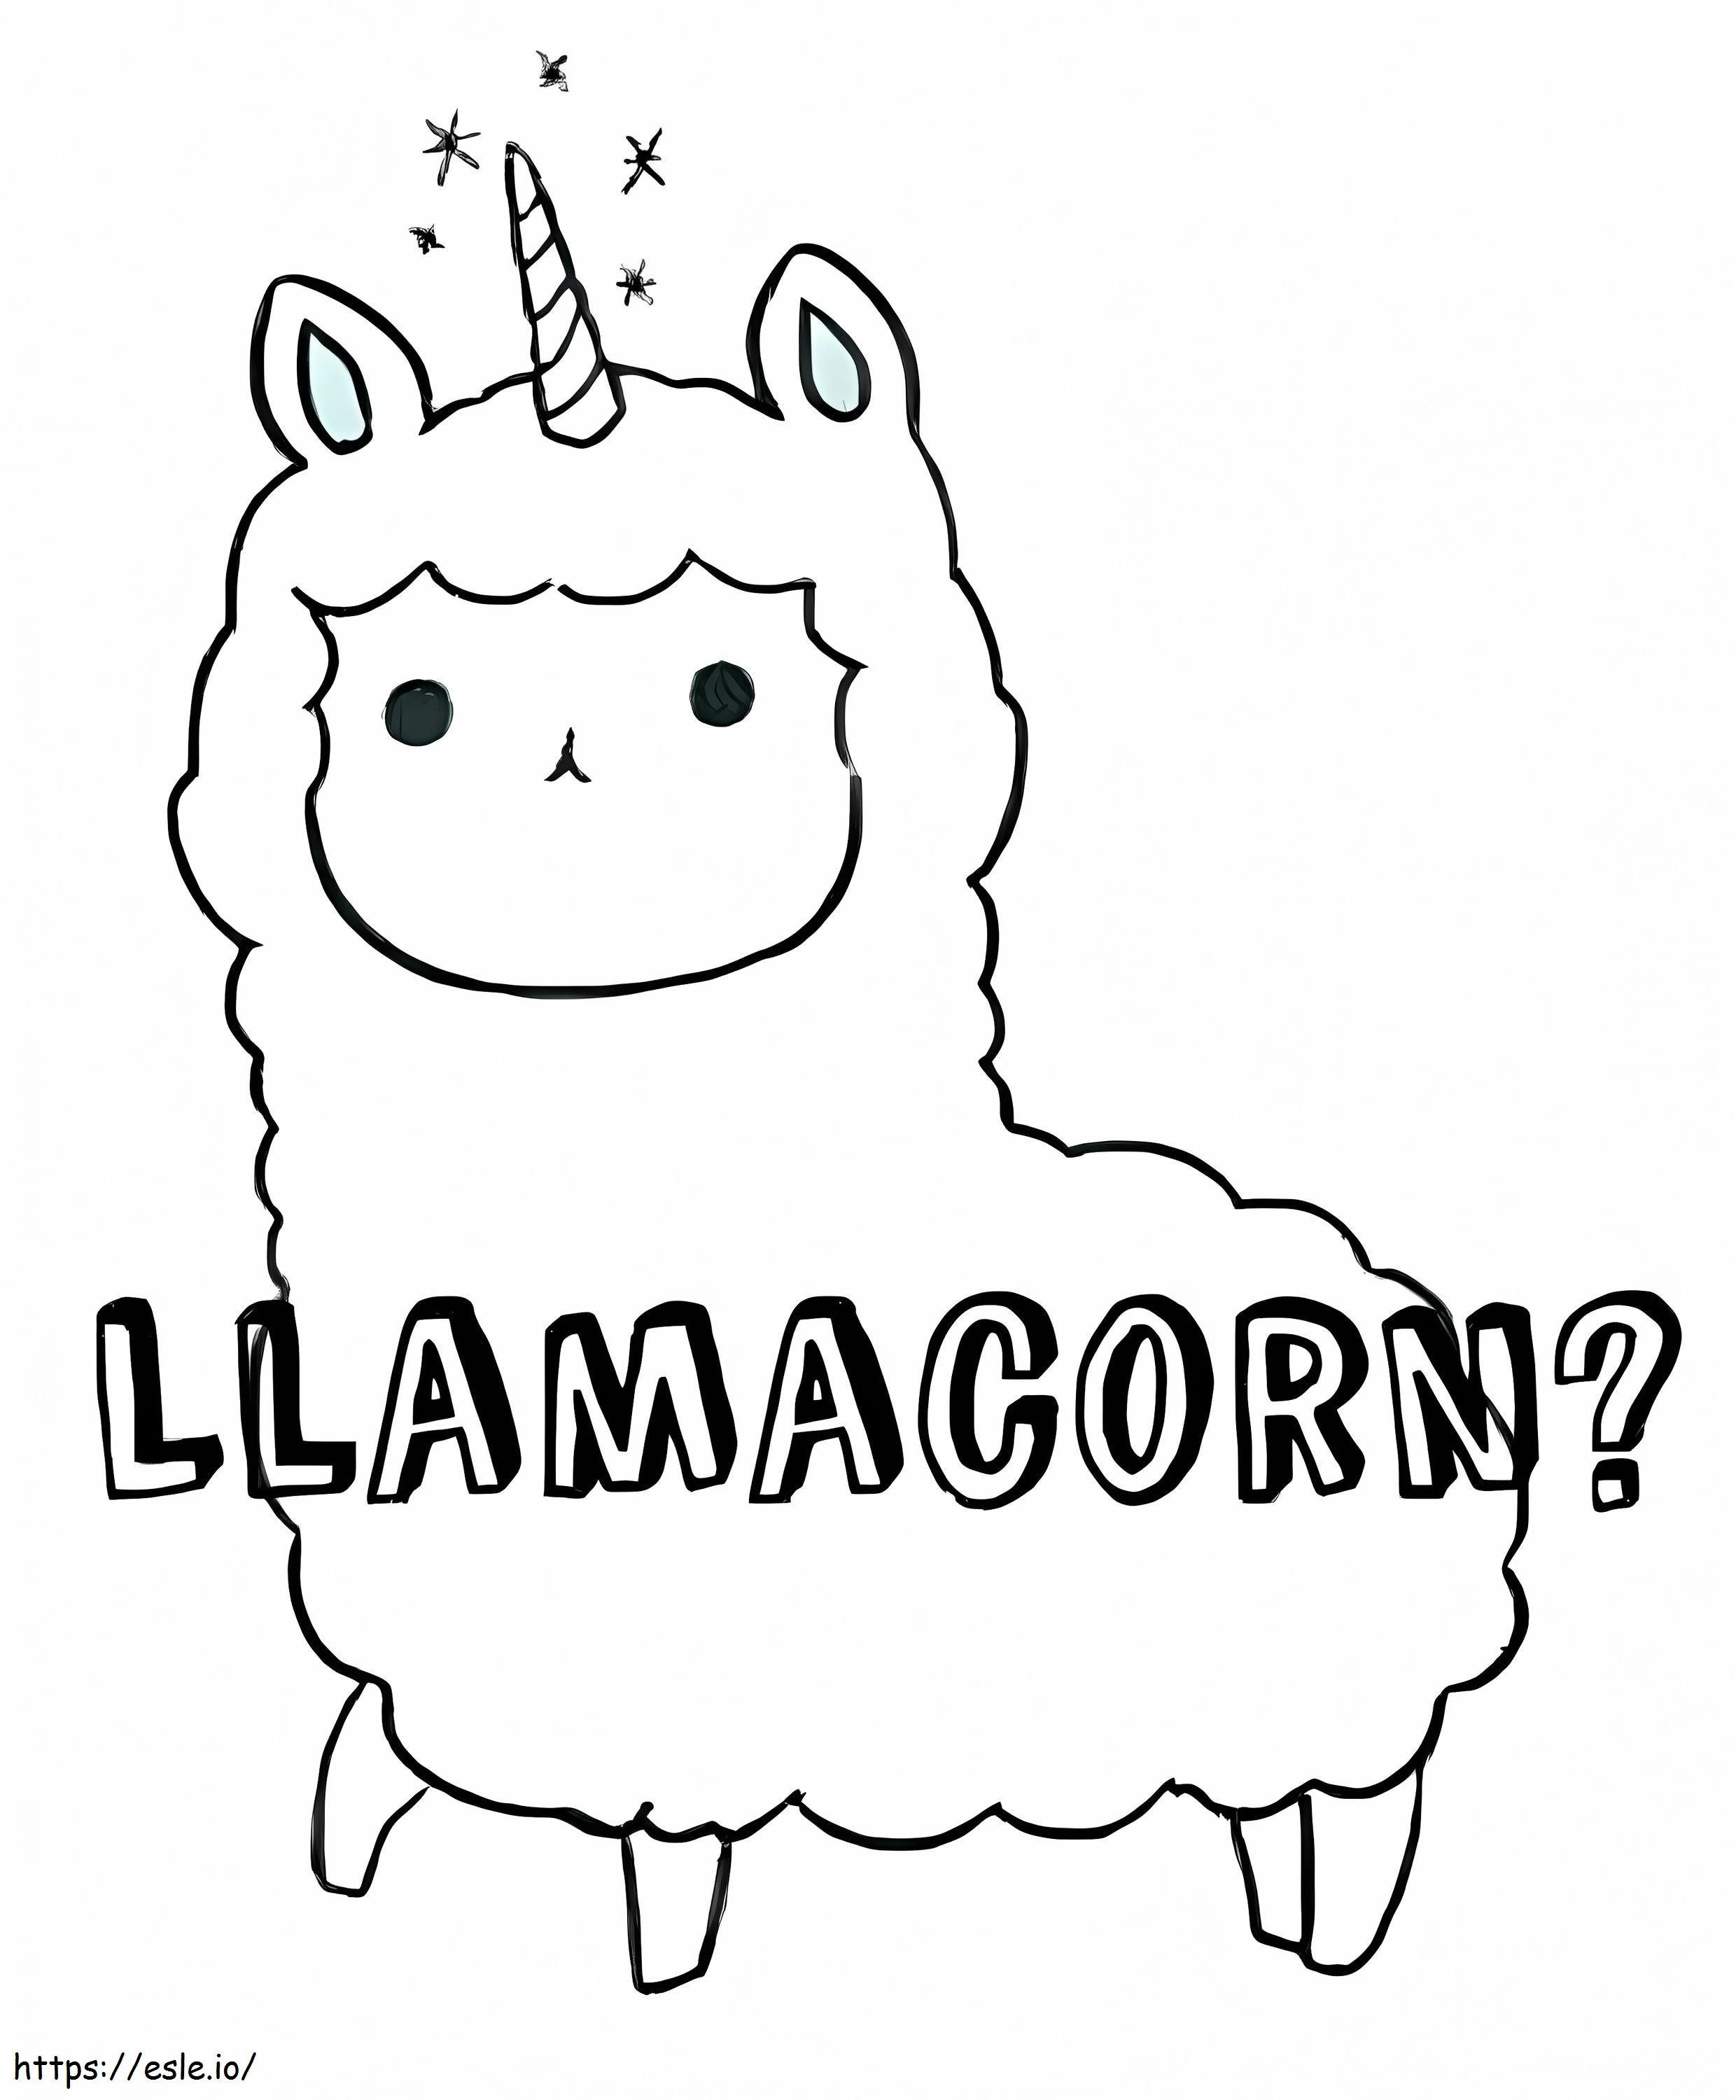 Llamacorn adorabil de colorat